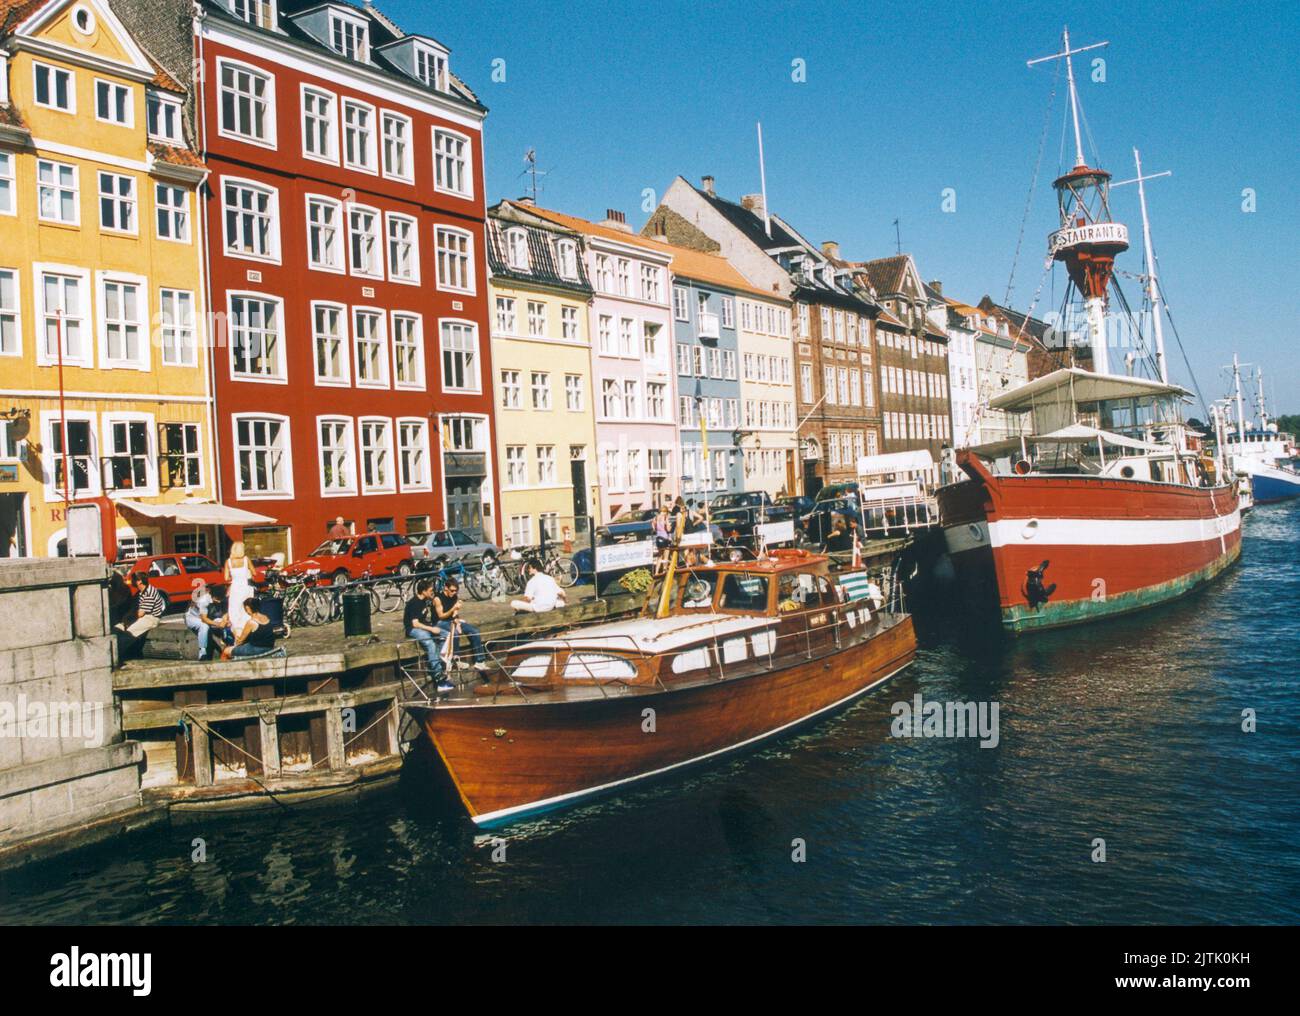 COPENHAGUE Nyhavn con sus pequeños cafés y bares a lo largo de la zona del puerto Foto de stock